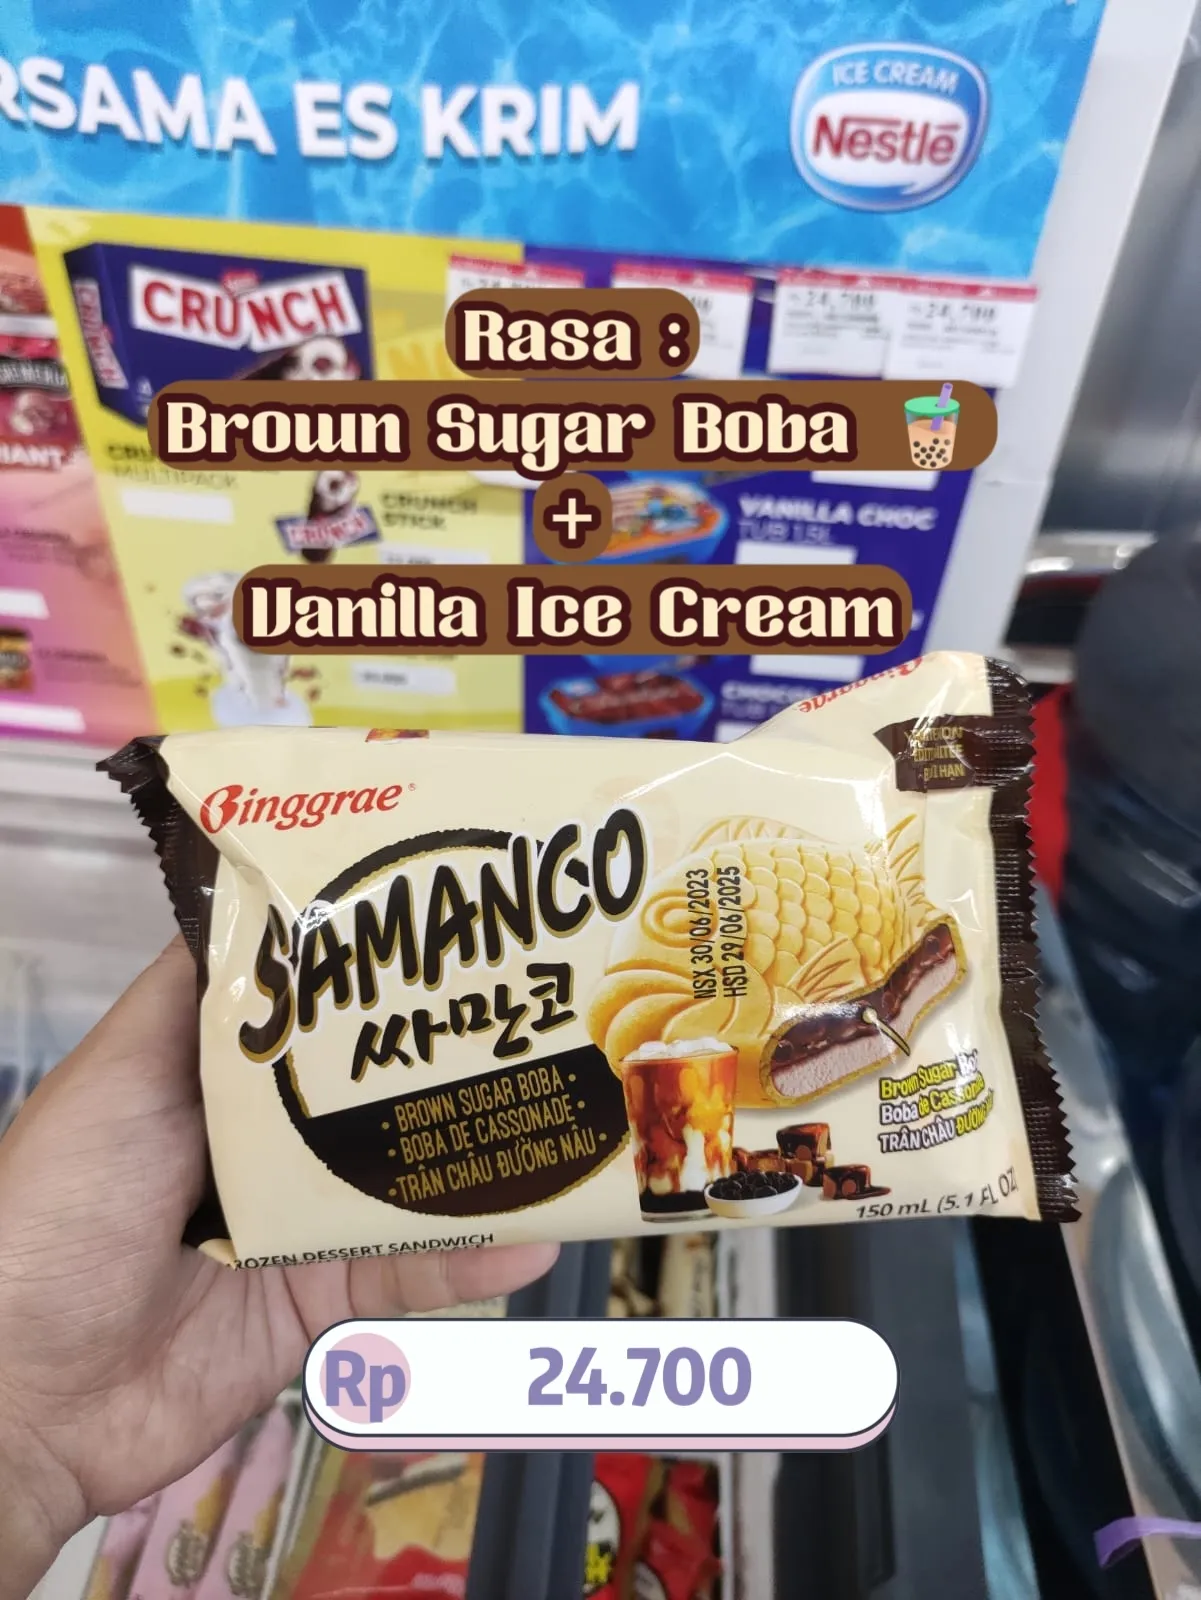 Jual Binggrae Power Cap Soda Flavored - Kota Depok